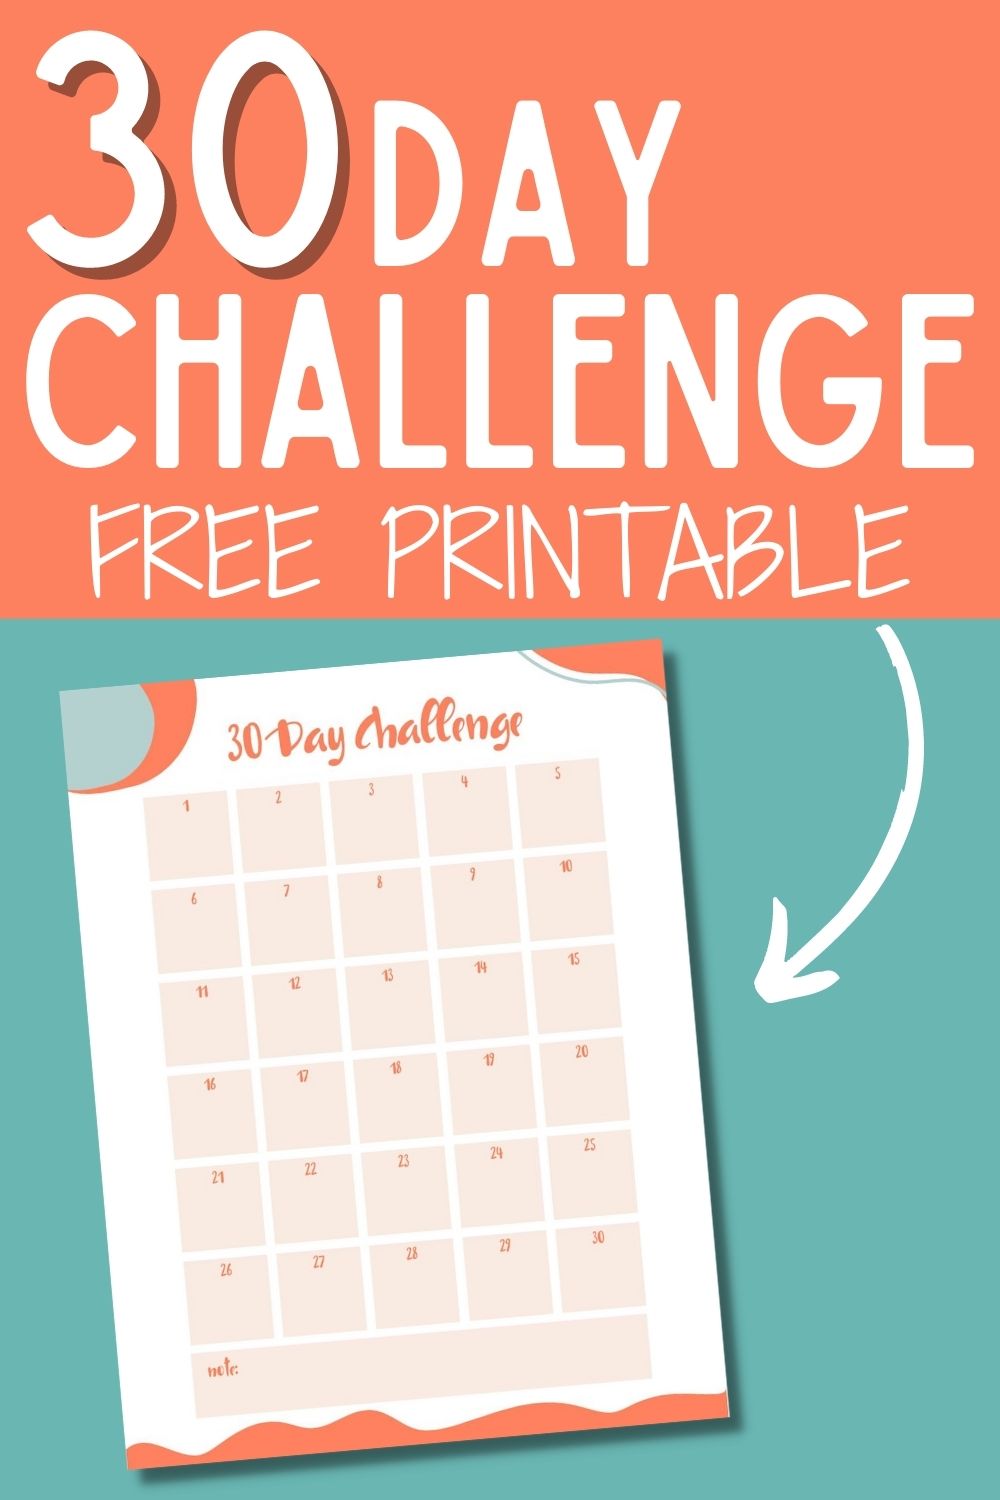 30 day arm challenge calendar printable